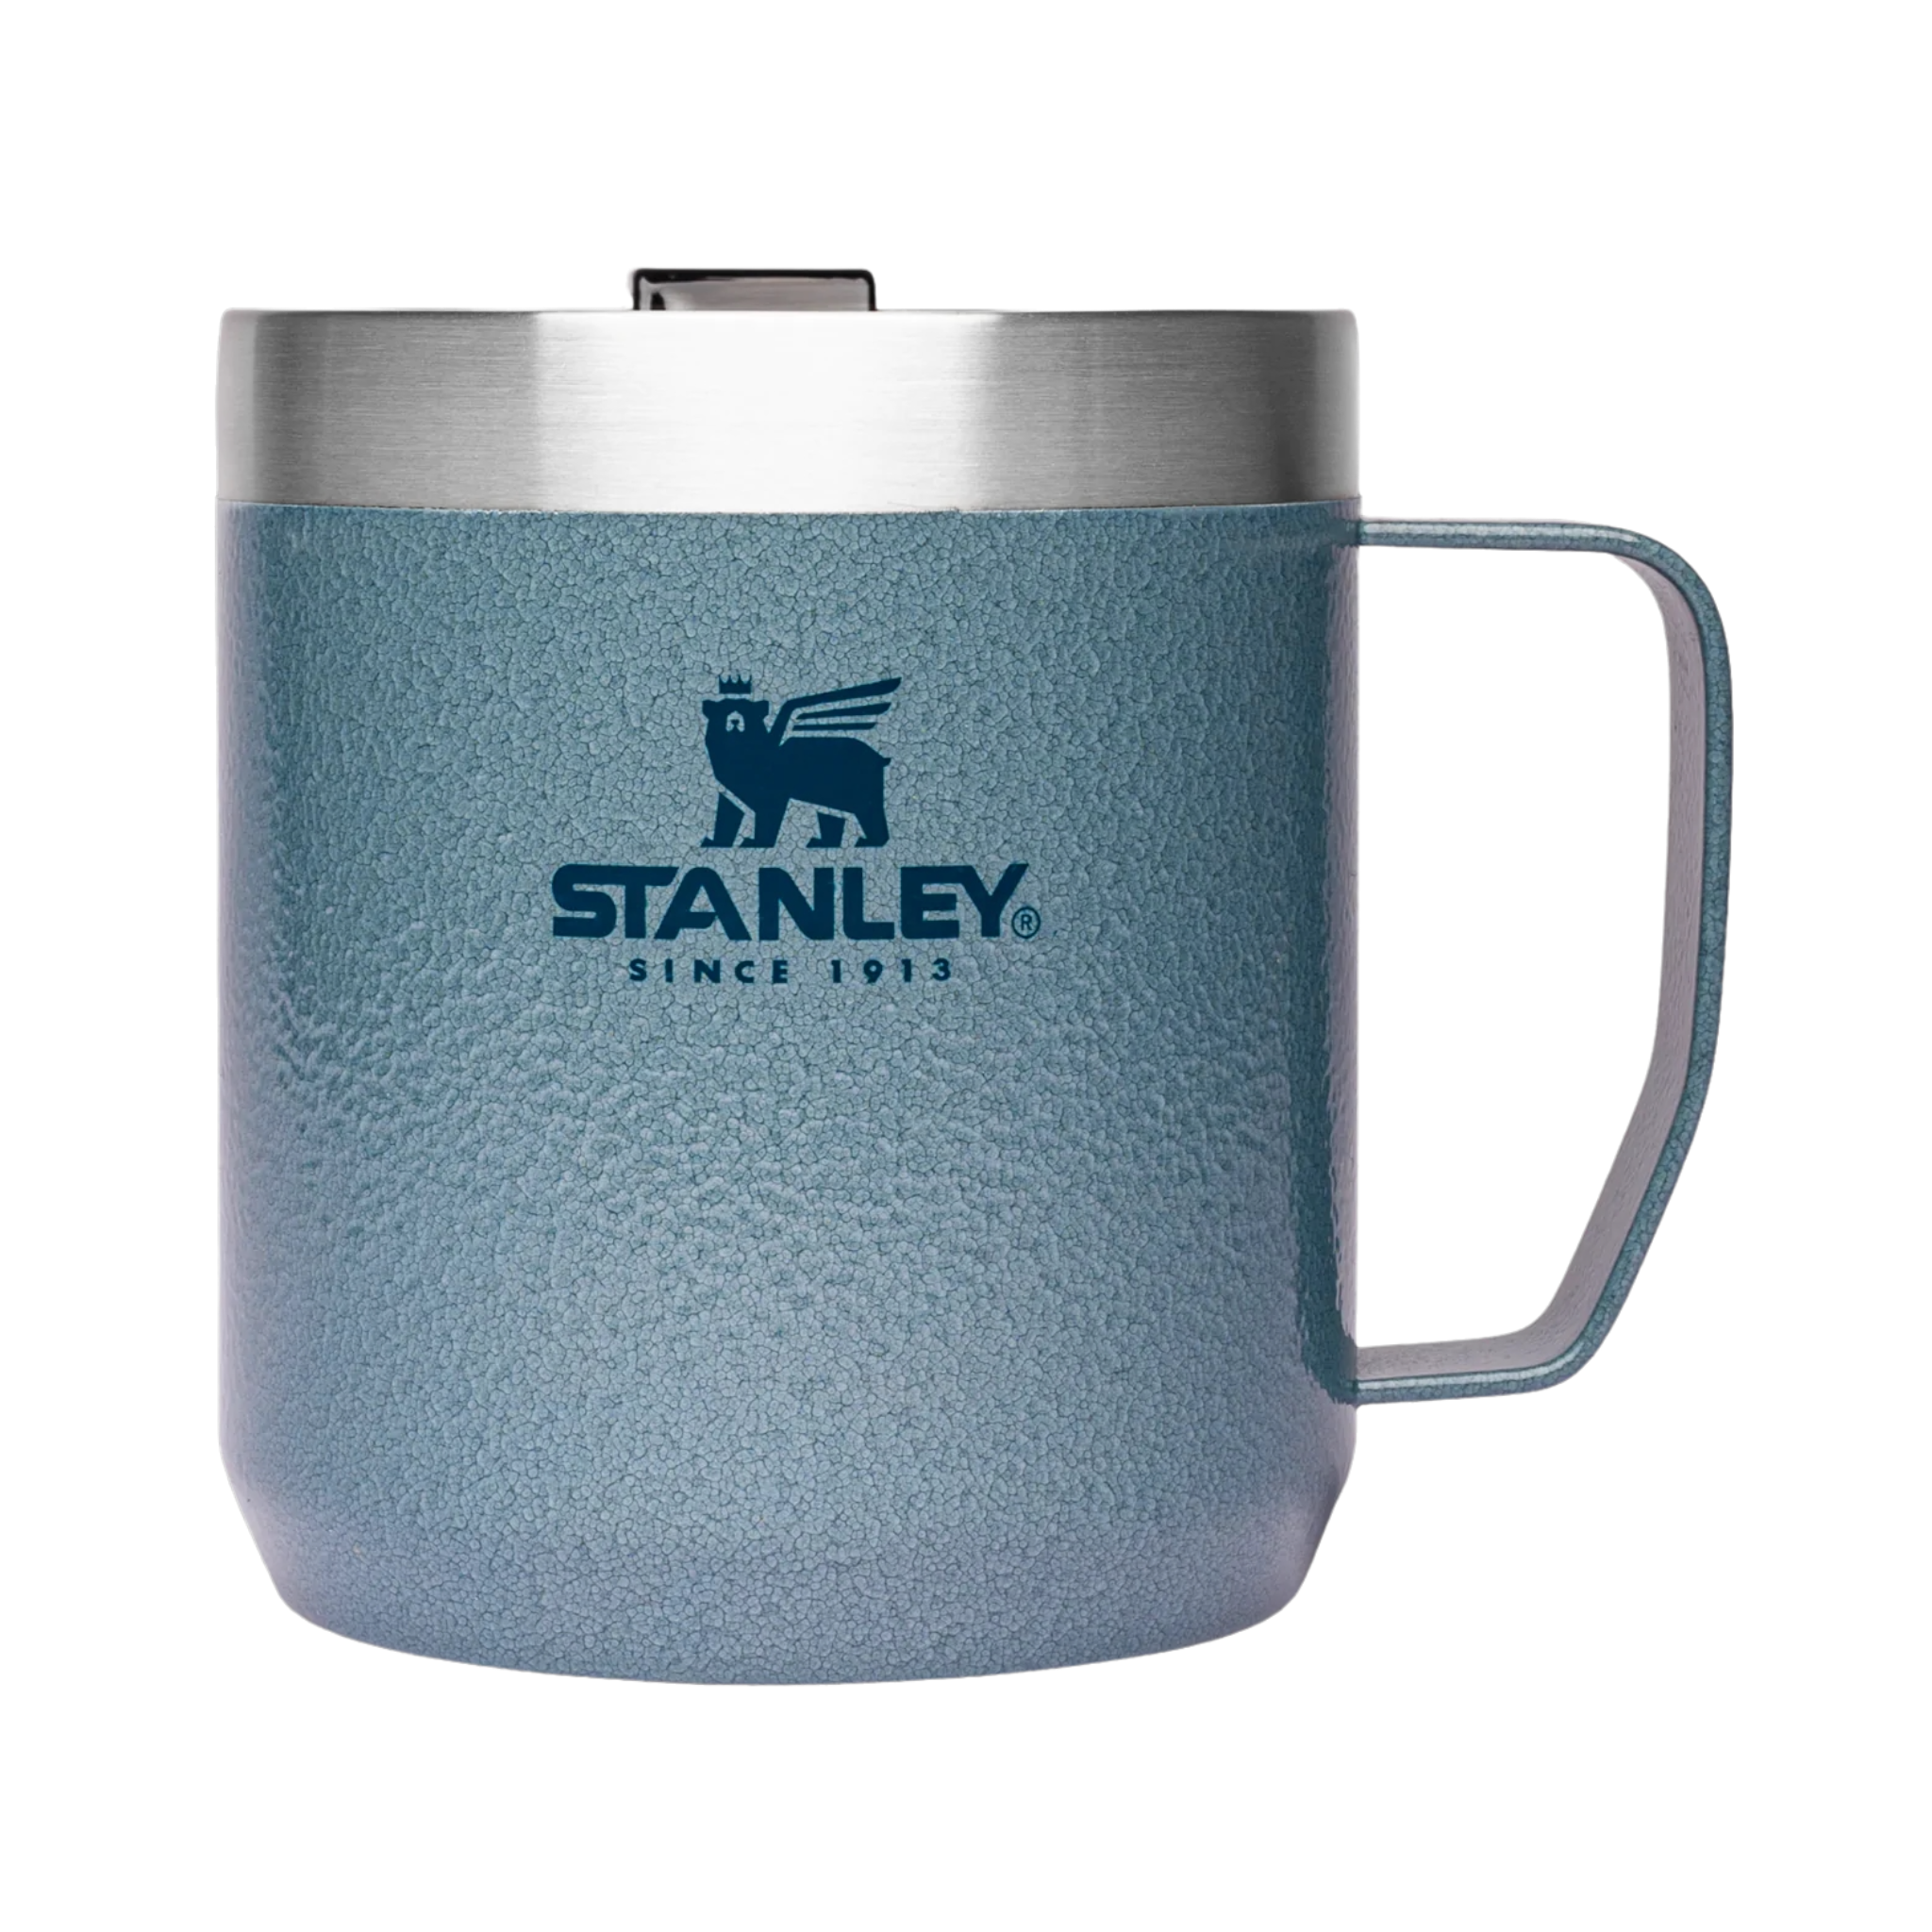 Stanley Camping Mug, Classic Legendary Camp Mug 12oz / 350ml Matte